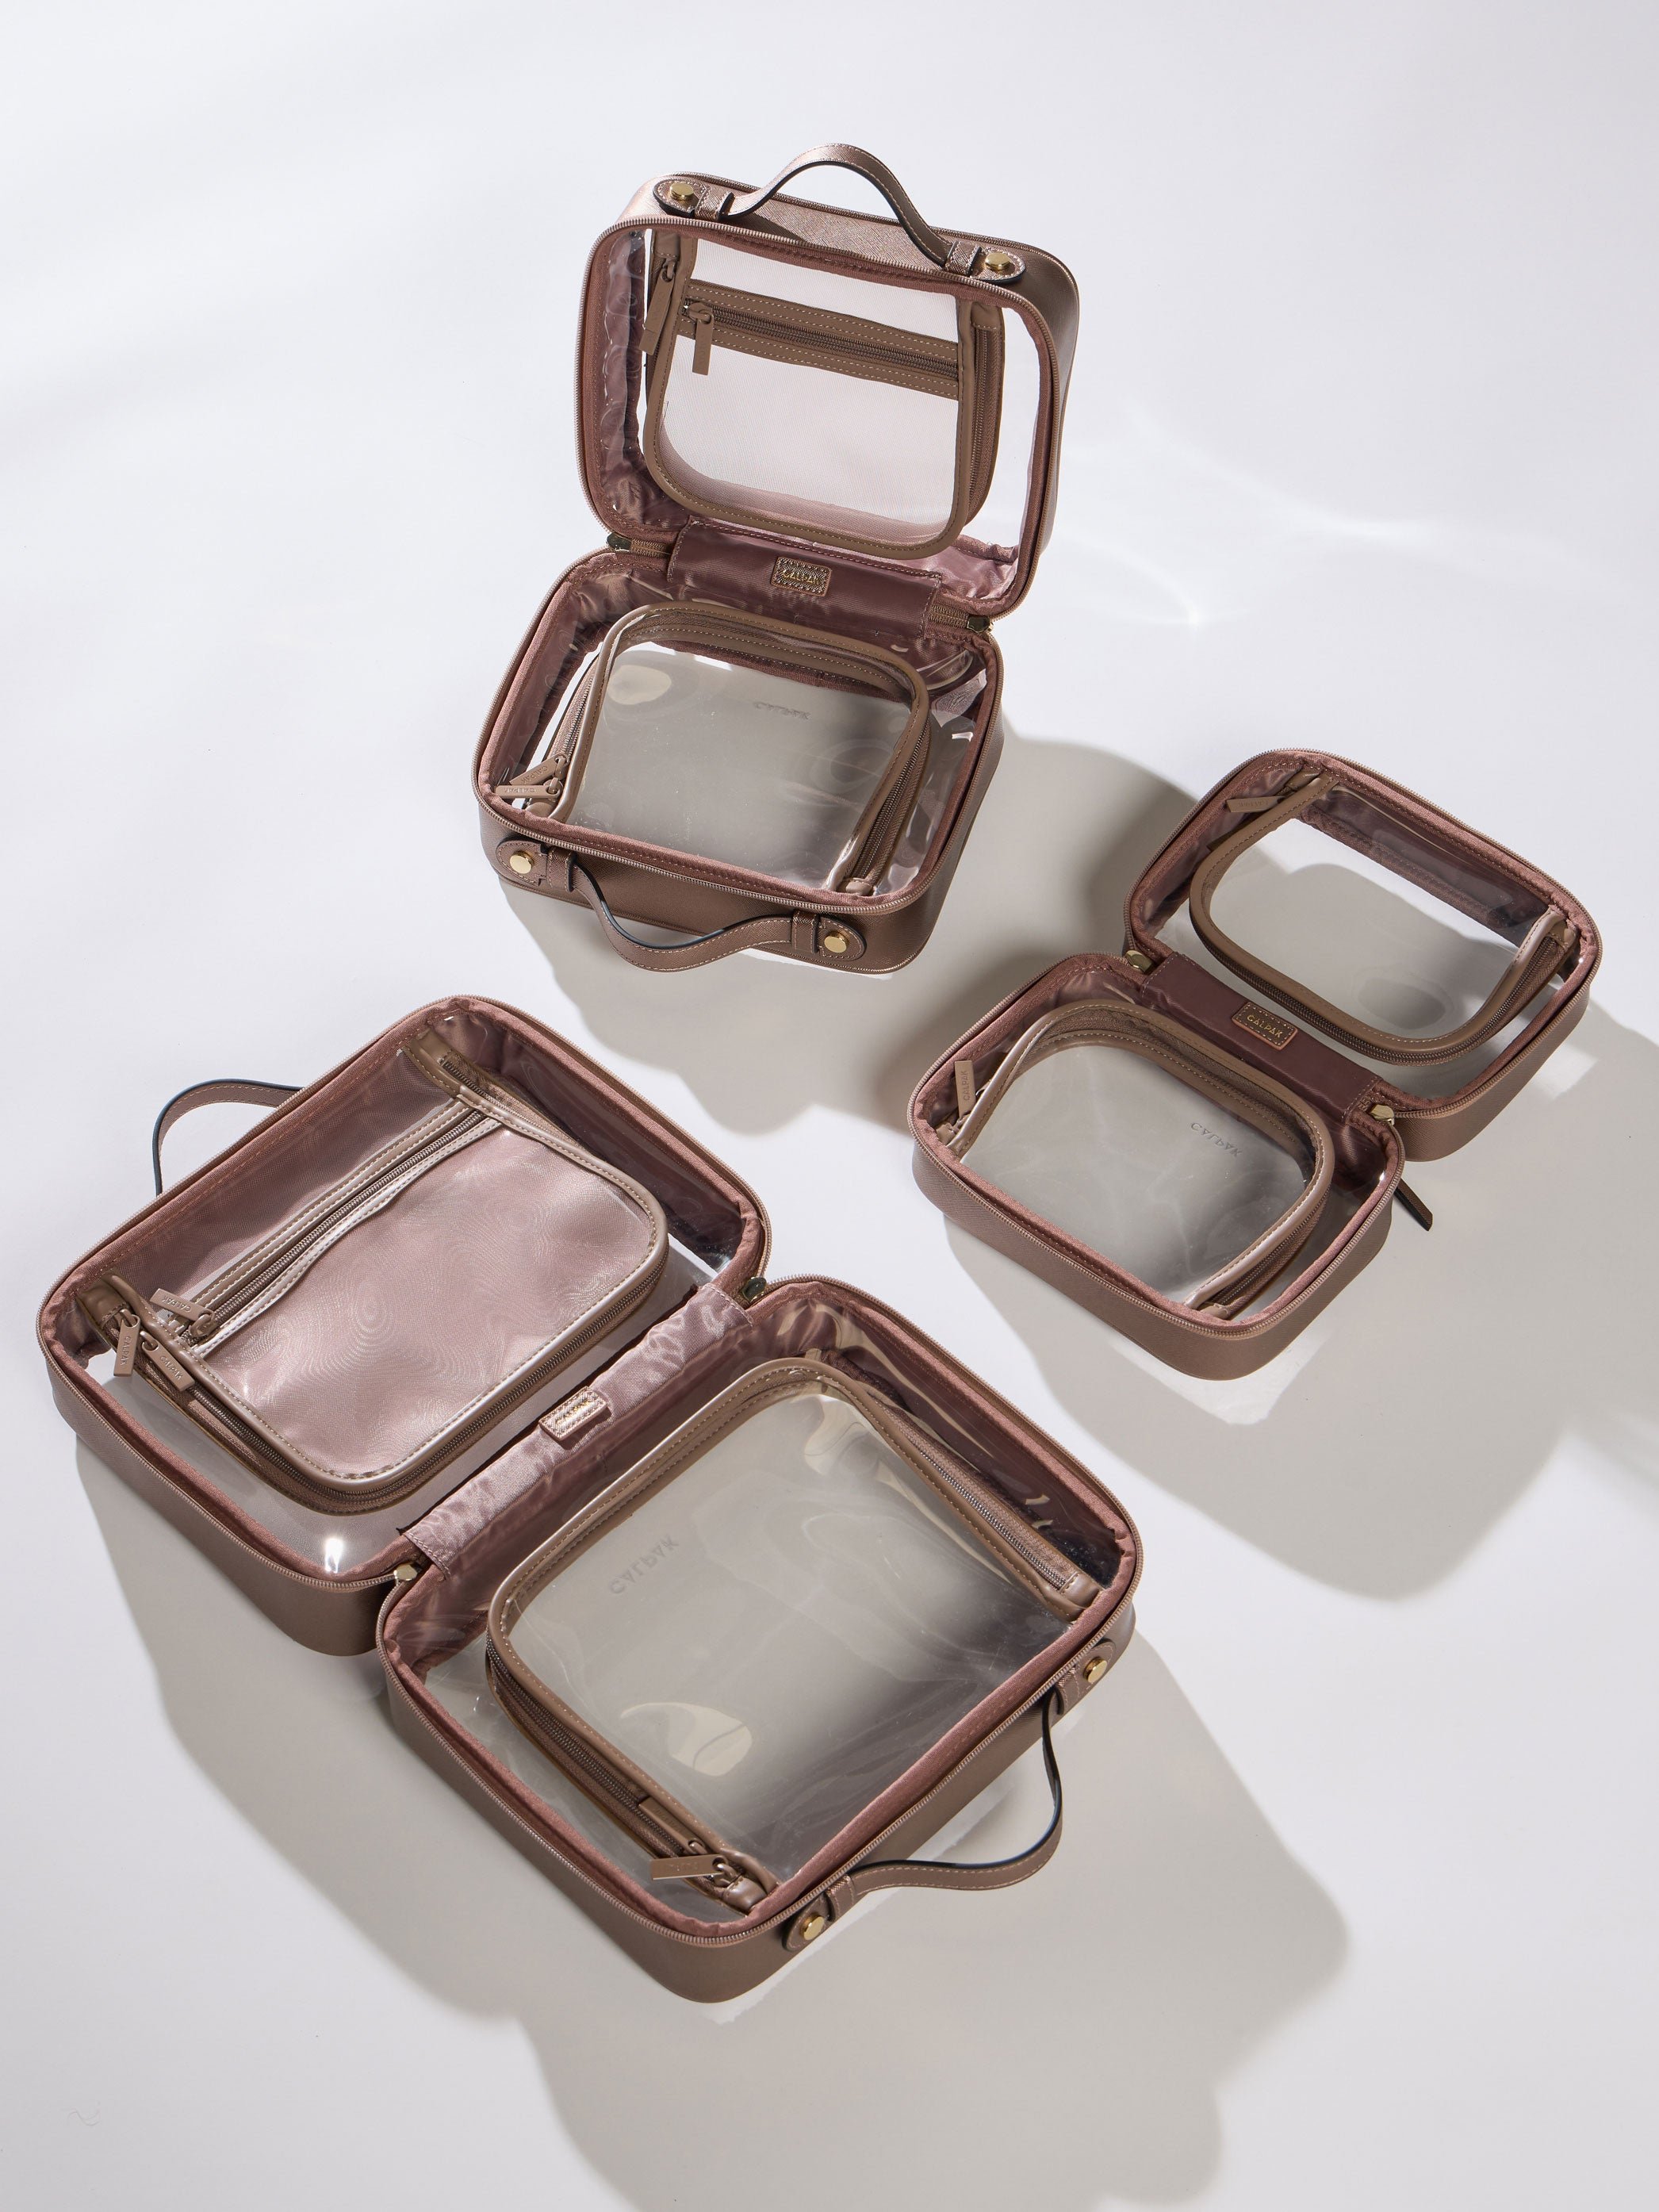 CALPAK Medium Clear Cosmetic Case, Large Clear Cosmetic Case and Small Clear Cosmetic Case in brown bronze